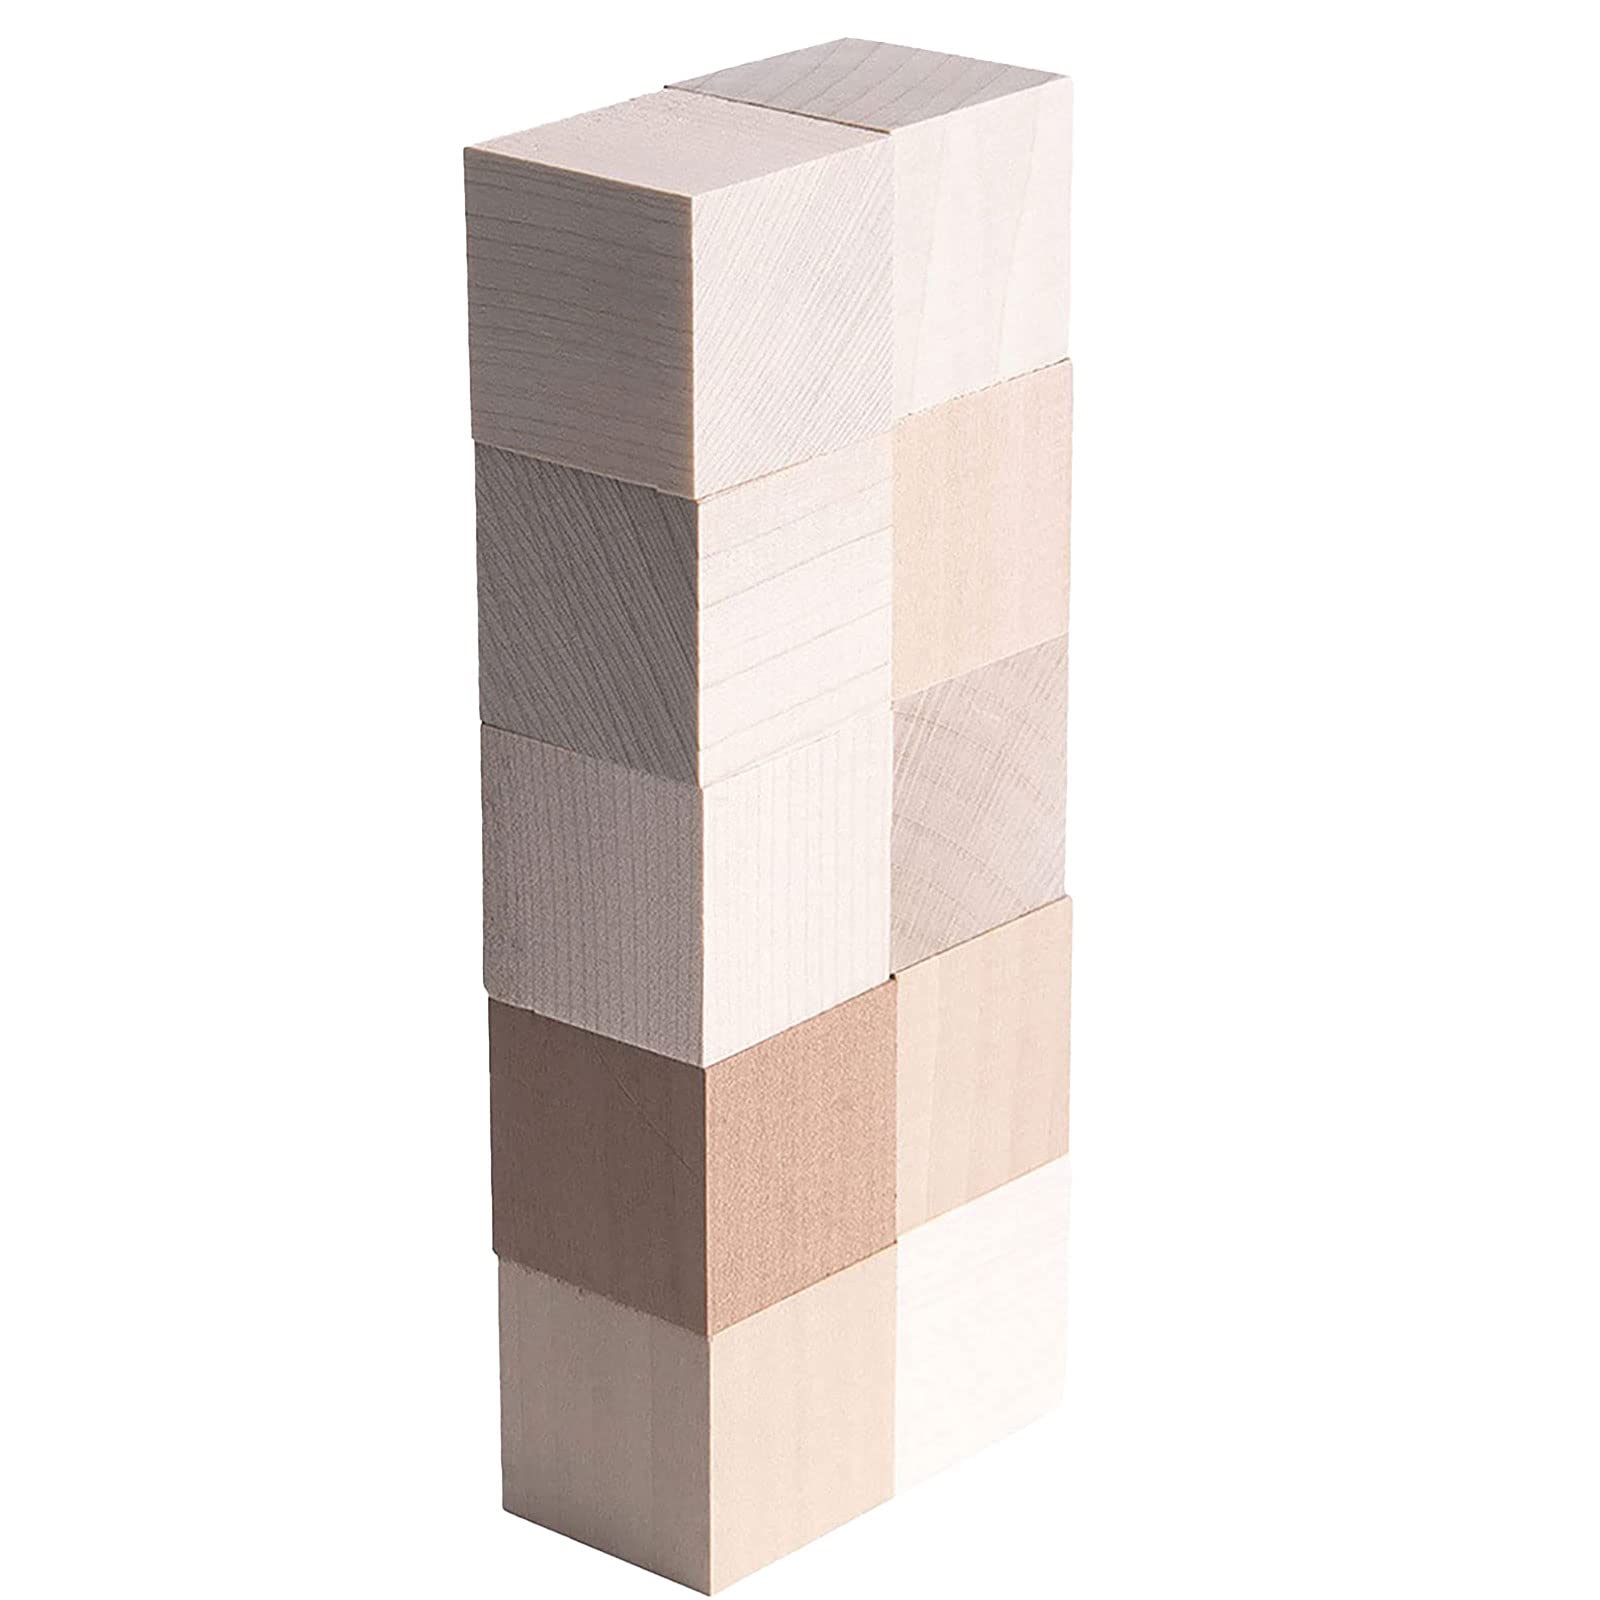 10個セット 立方体積み木 積みやすい 本物の木 ニキーチン 国産